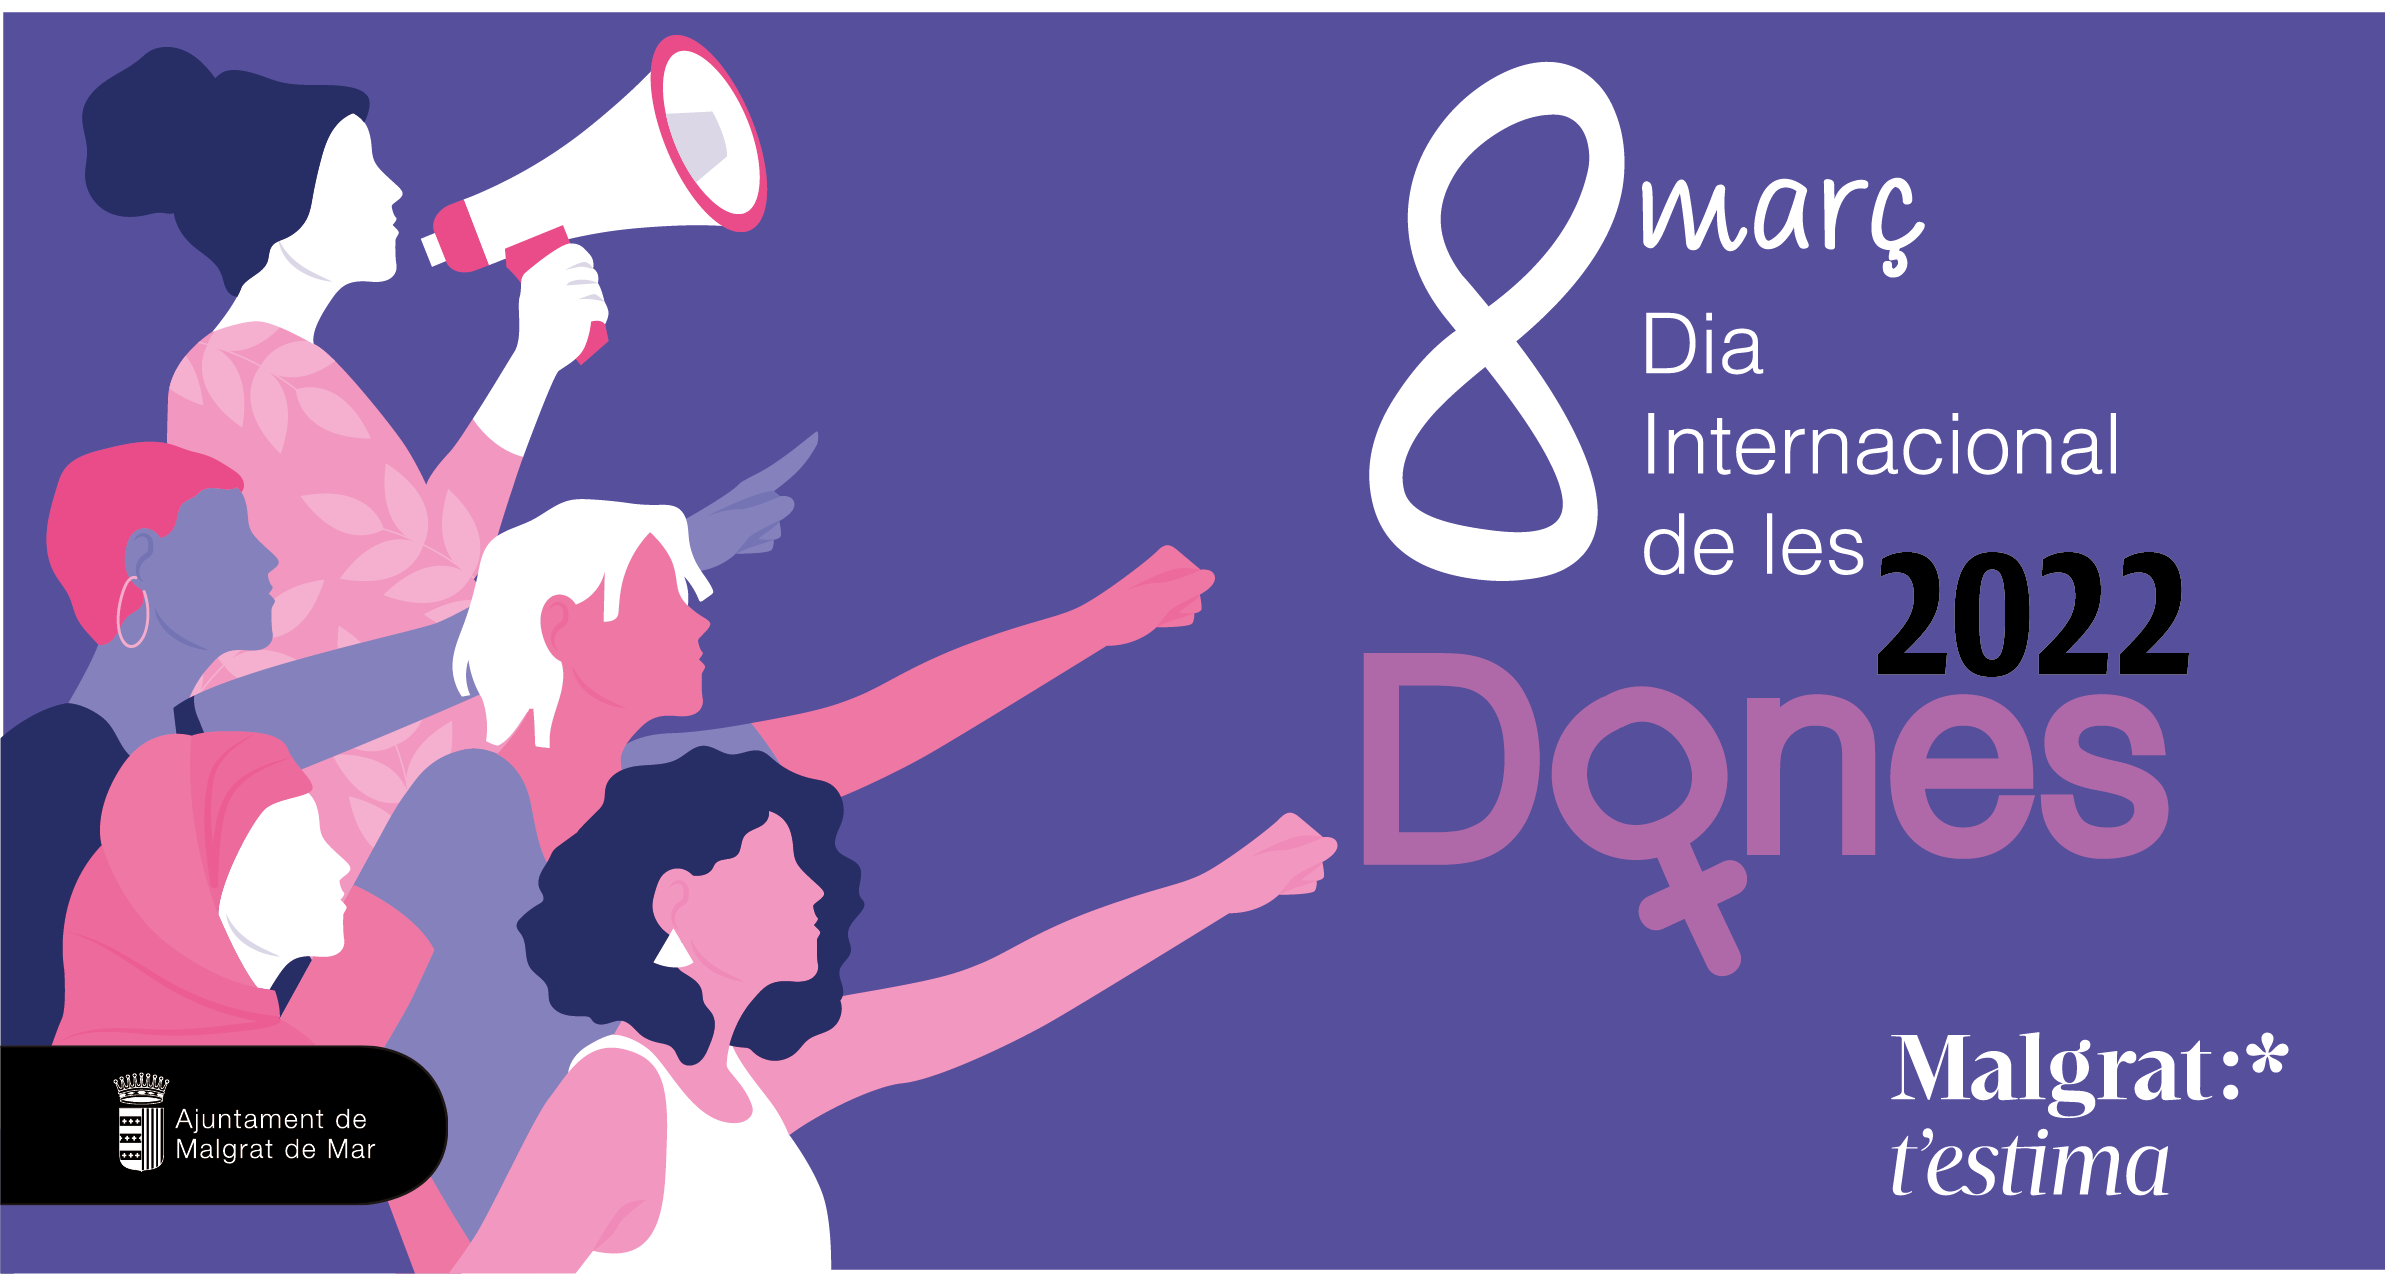 8M Dia Internacional de les Dones: Xerrada